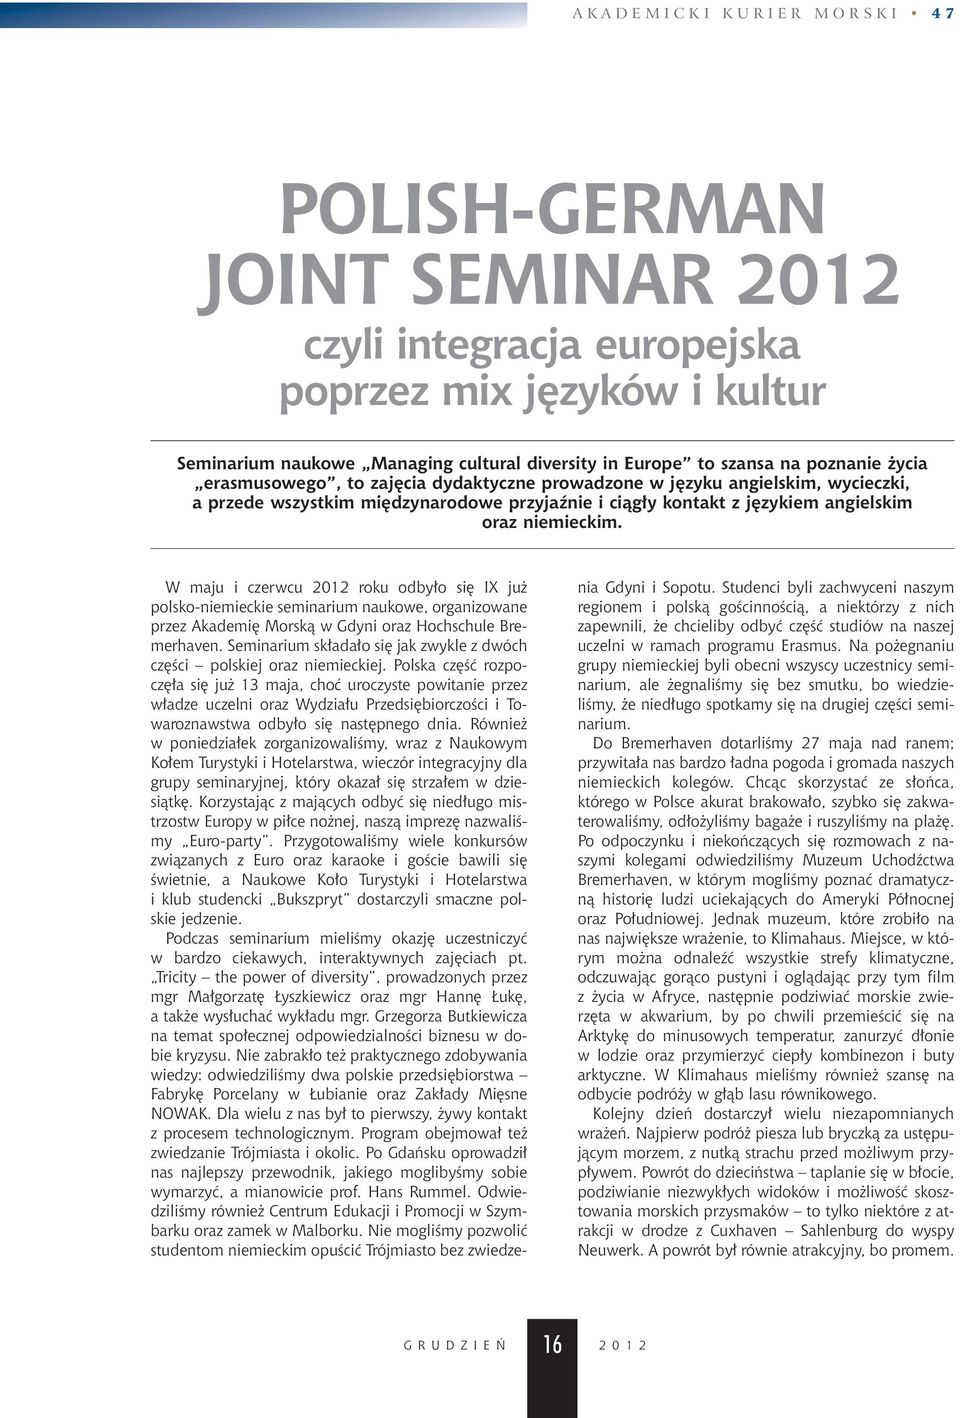 W maju i czerwcu 2012 roku odby o si IX ju polsko-niemieckie seminarium naukowe, organizowane przez Akademi Morskà w Gdyni oraz Hochschule Bremerhaven.